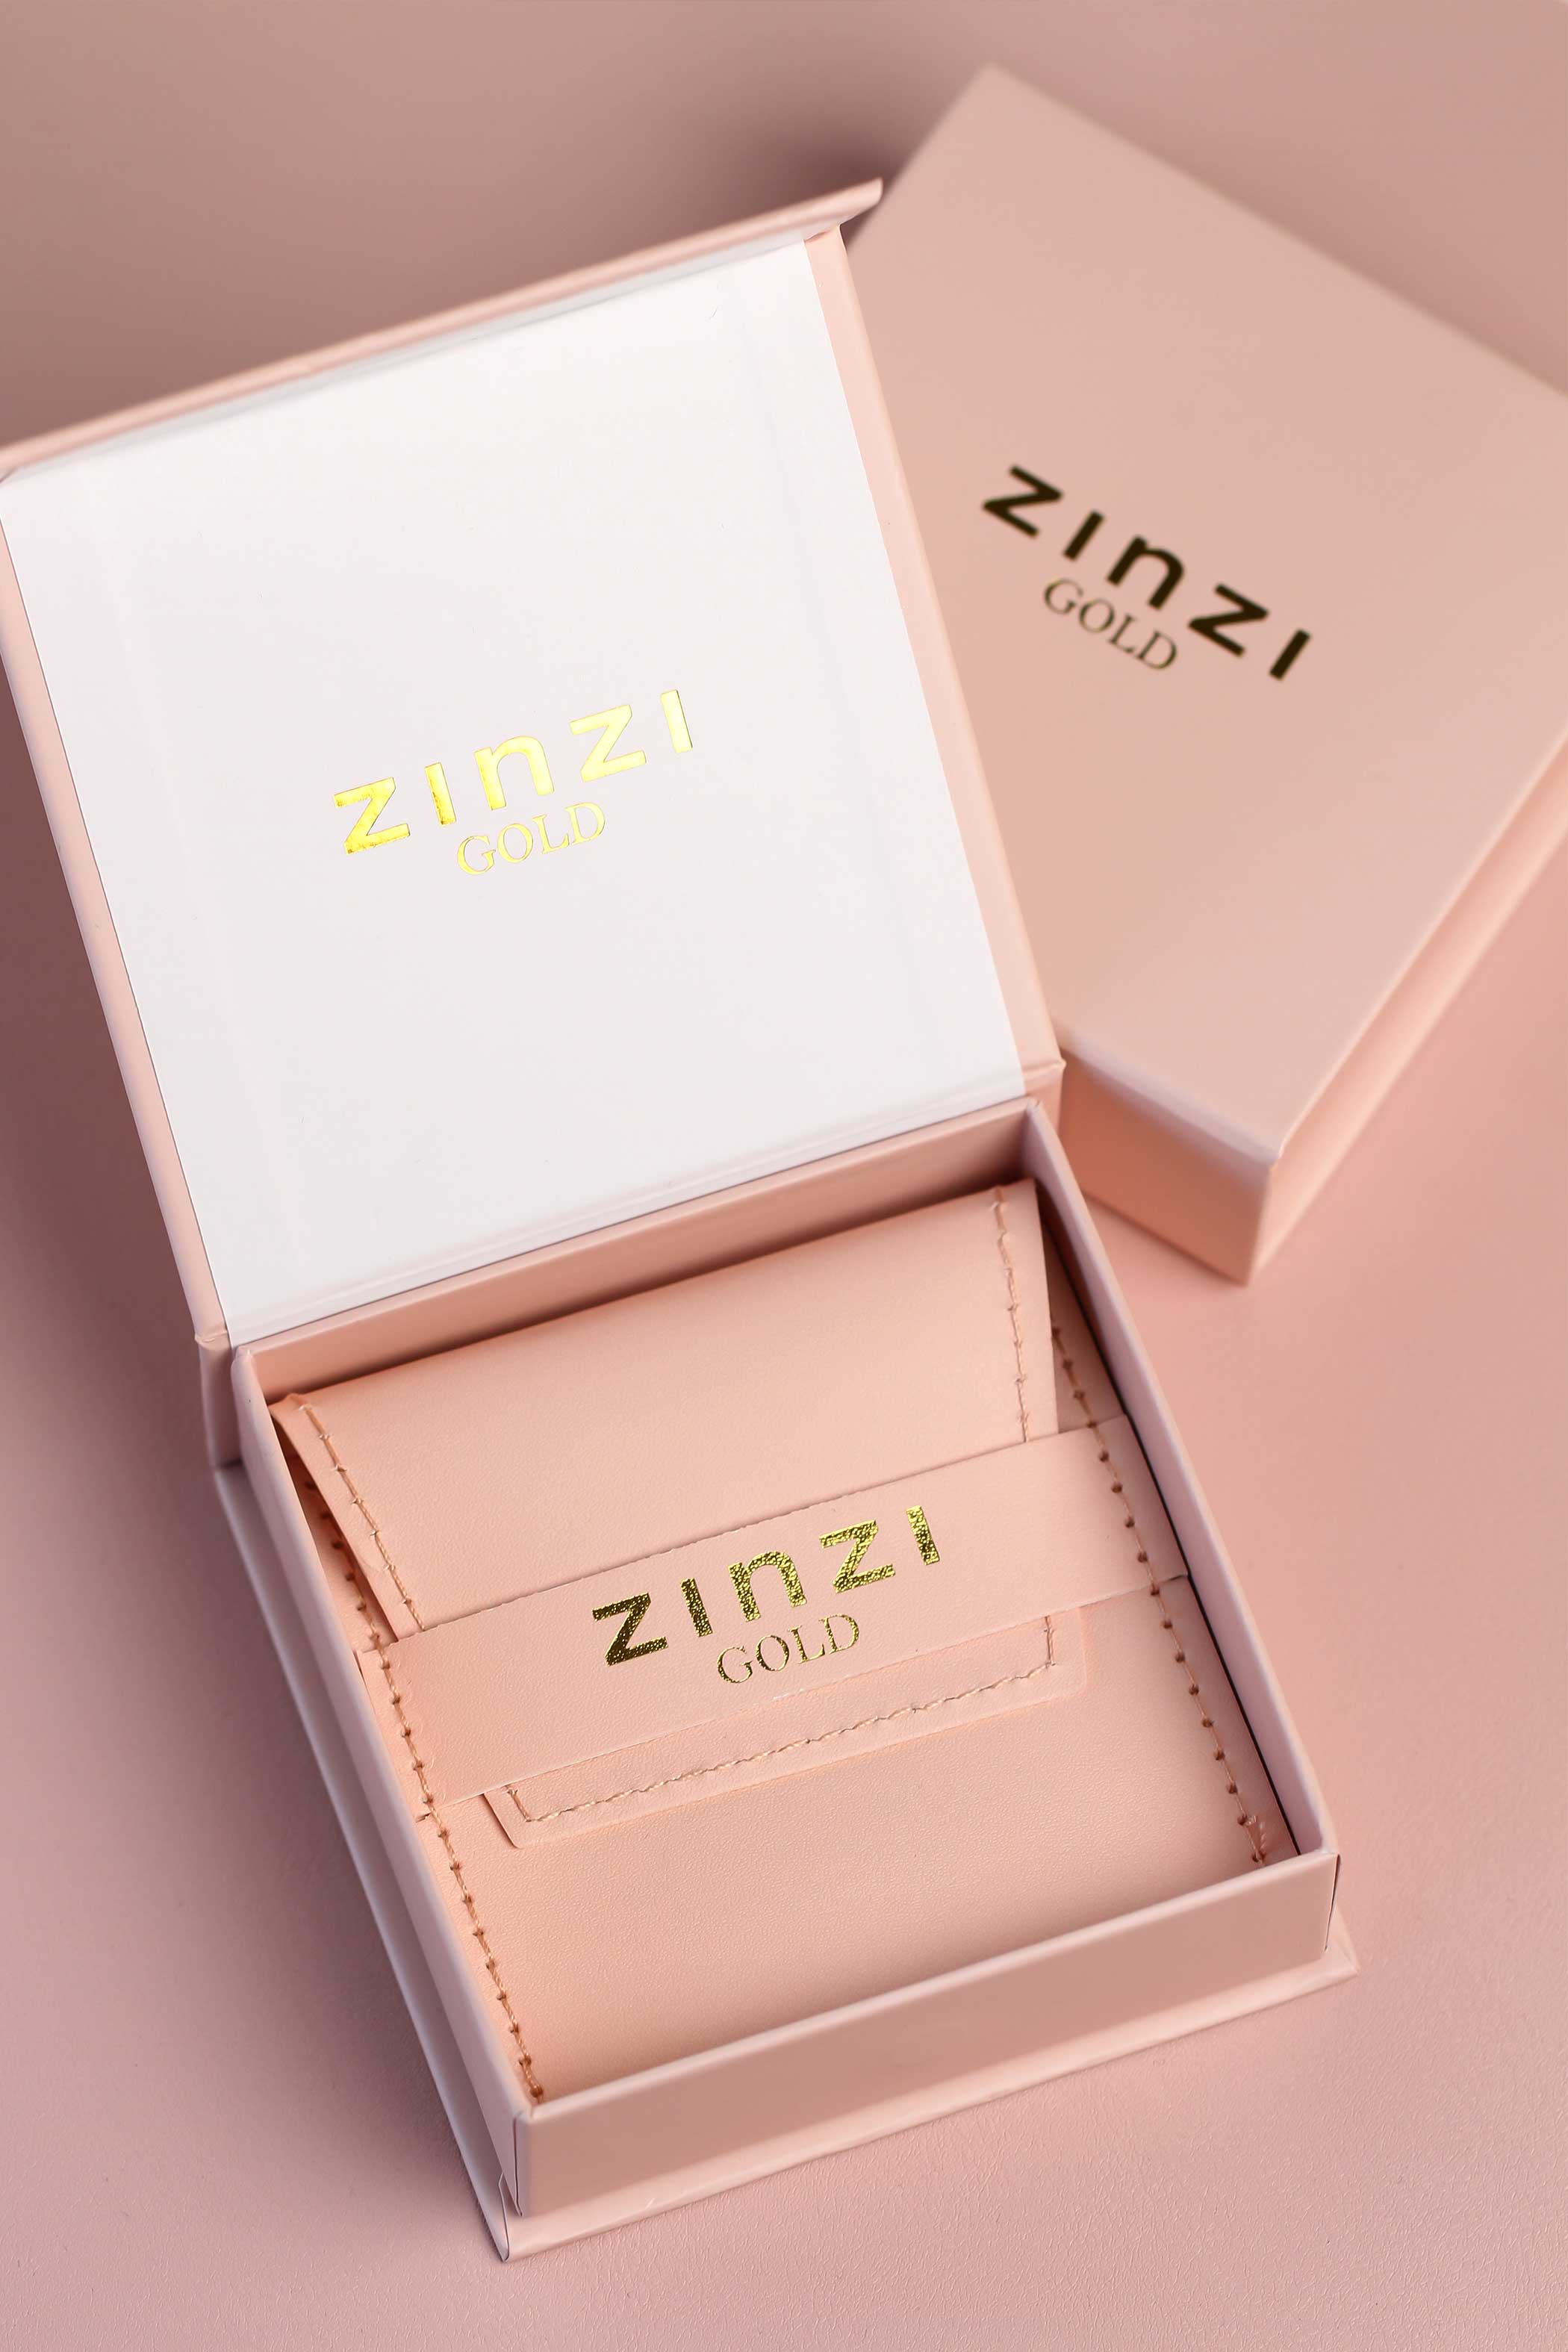 10mm ZINZI 14K Gold Stud Earrings 5 Round White Zirconias ZGO413